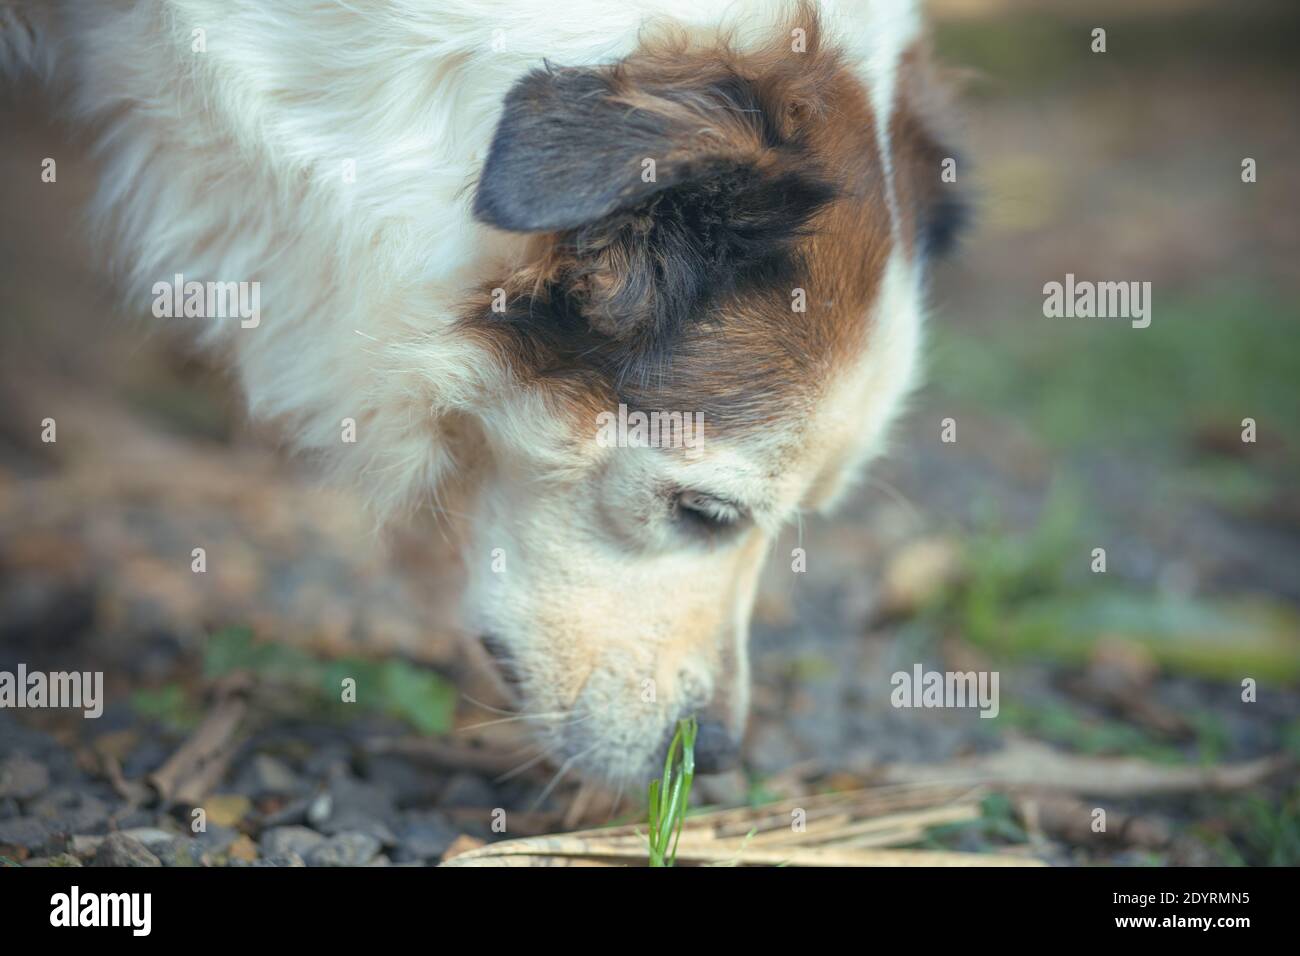 Un joli chien blanc mangeant de l'herbe sur un fond flou Banque D'Images